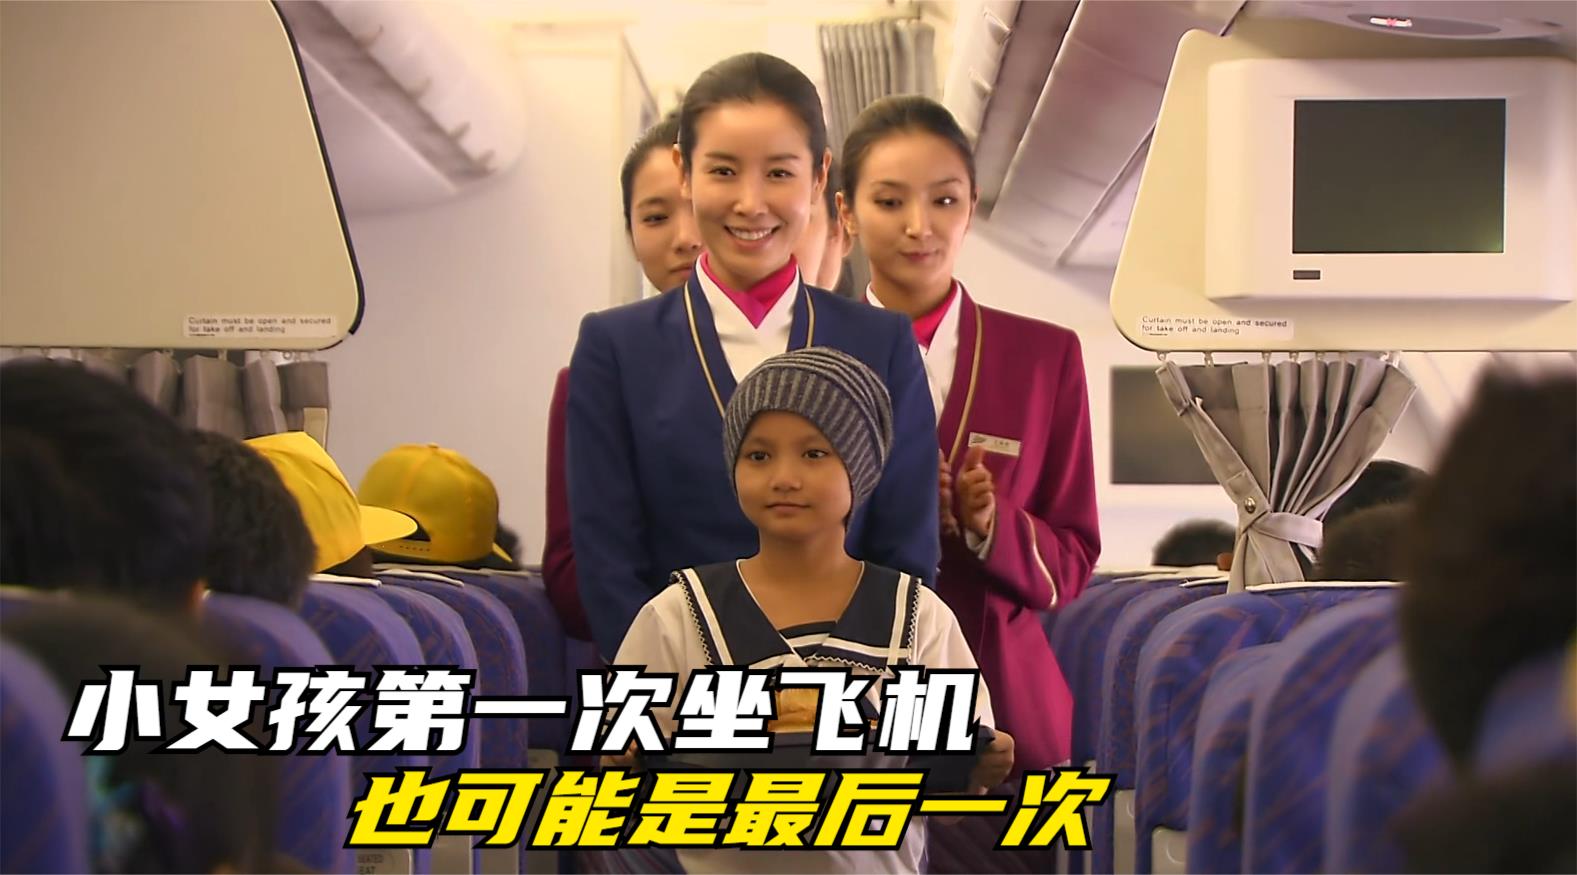 白血病小女孩坐飞机，父母以为点餐要钱，乘务组知道后做法很暖心